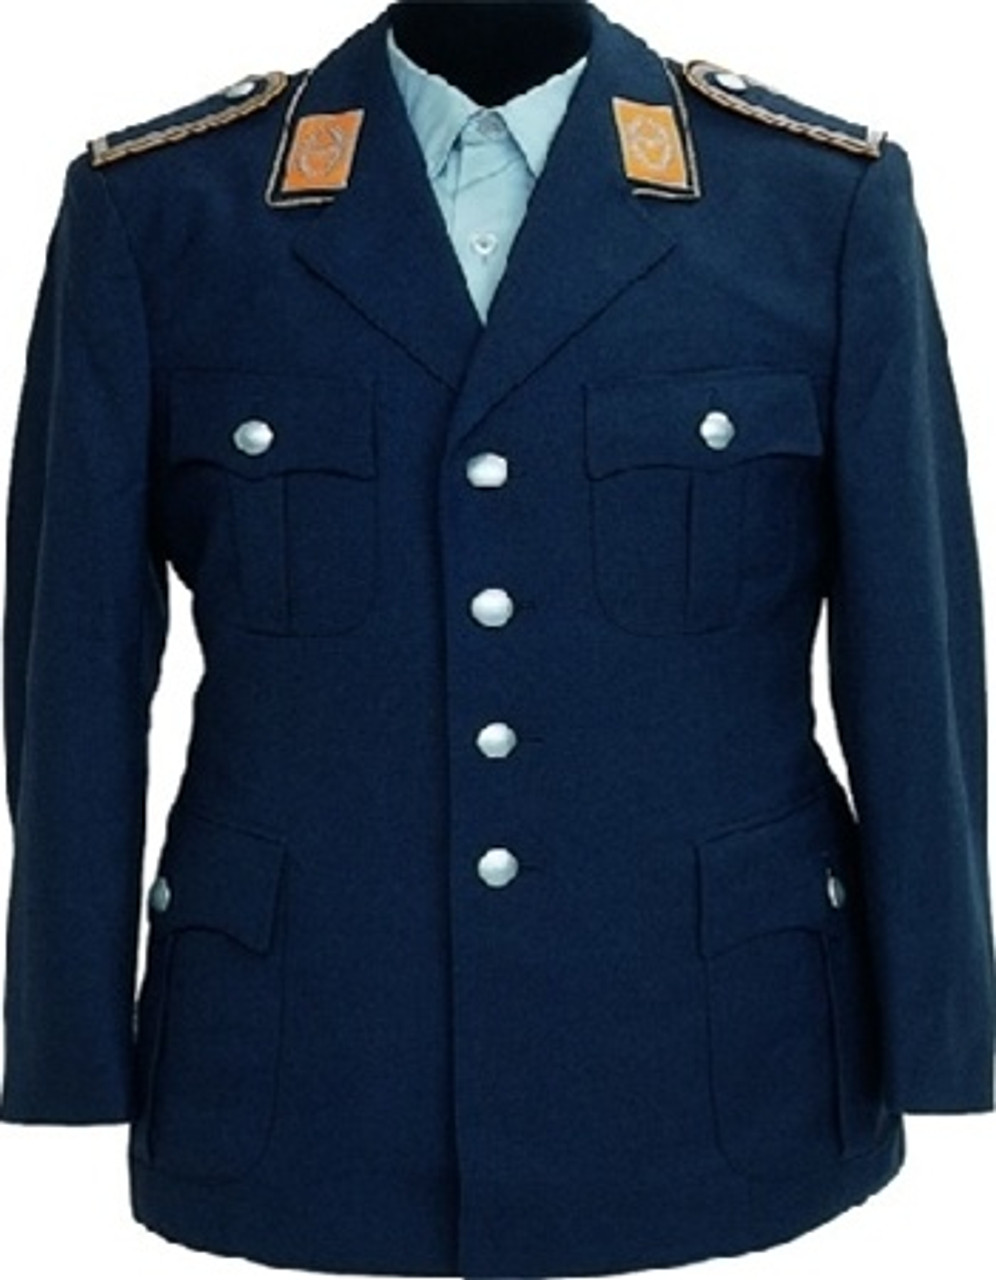 East German AF Uniform Jacket - Used from Hessen Surplus